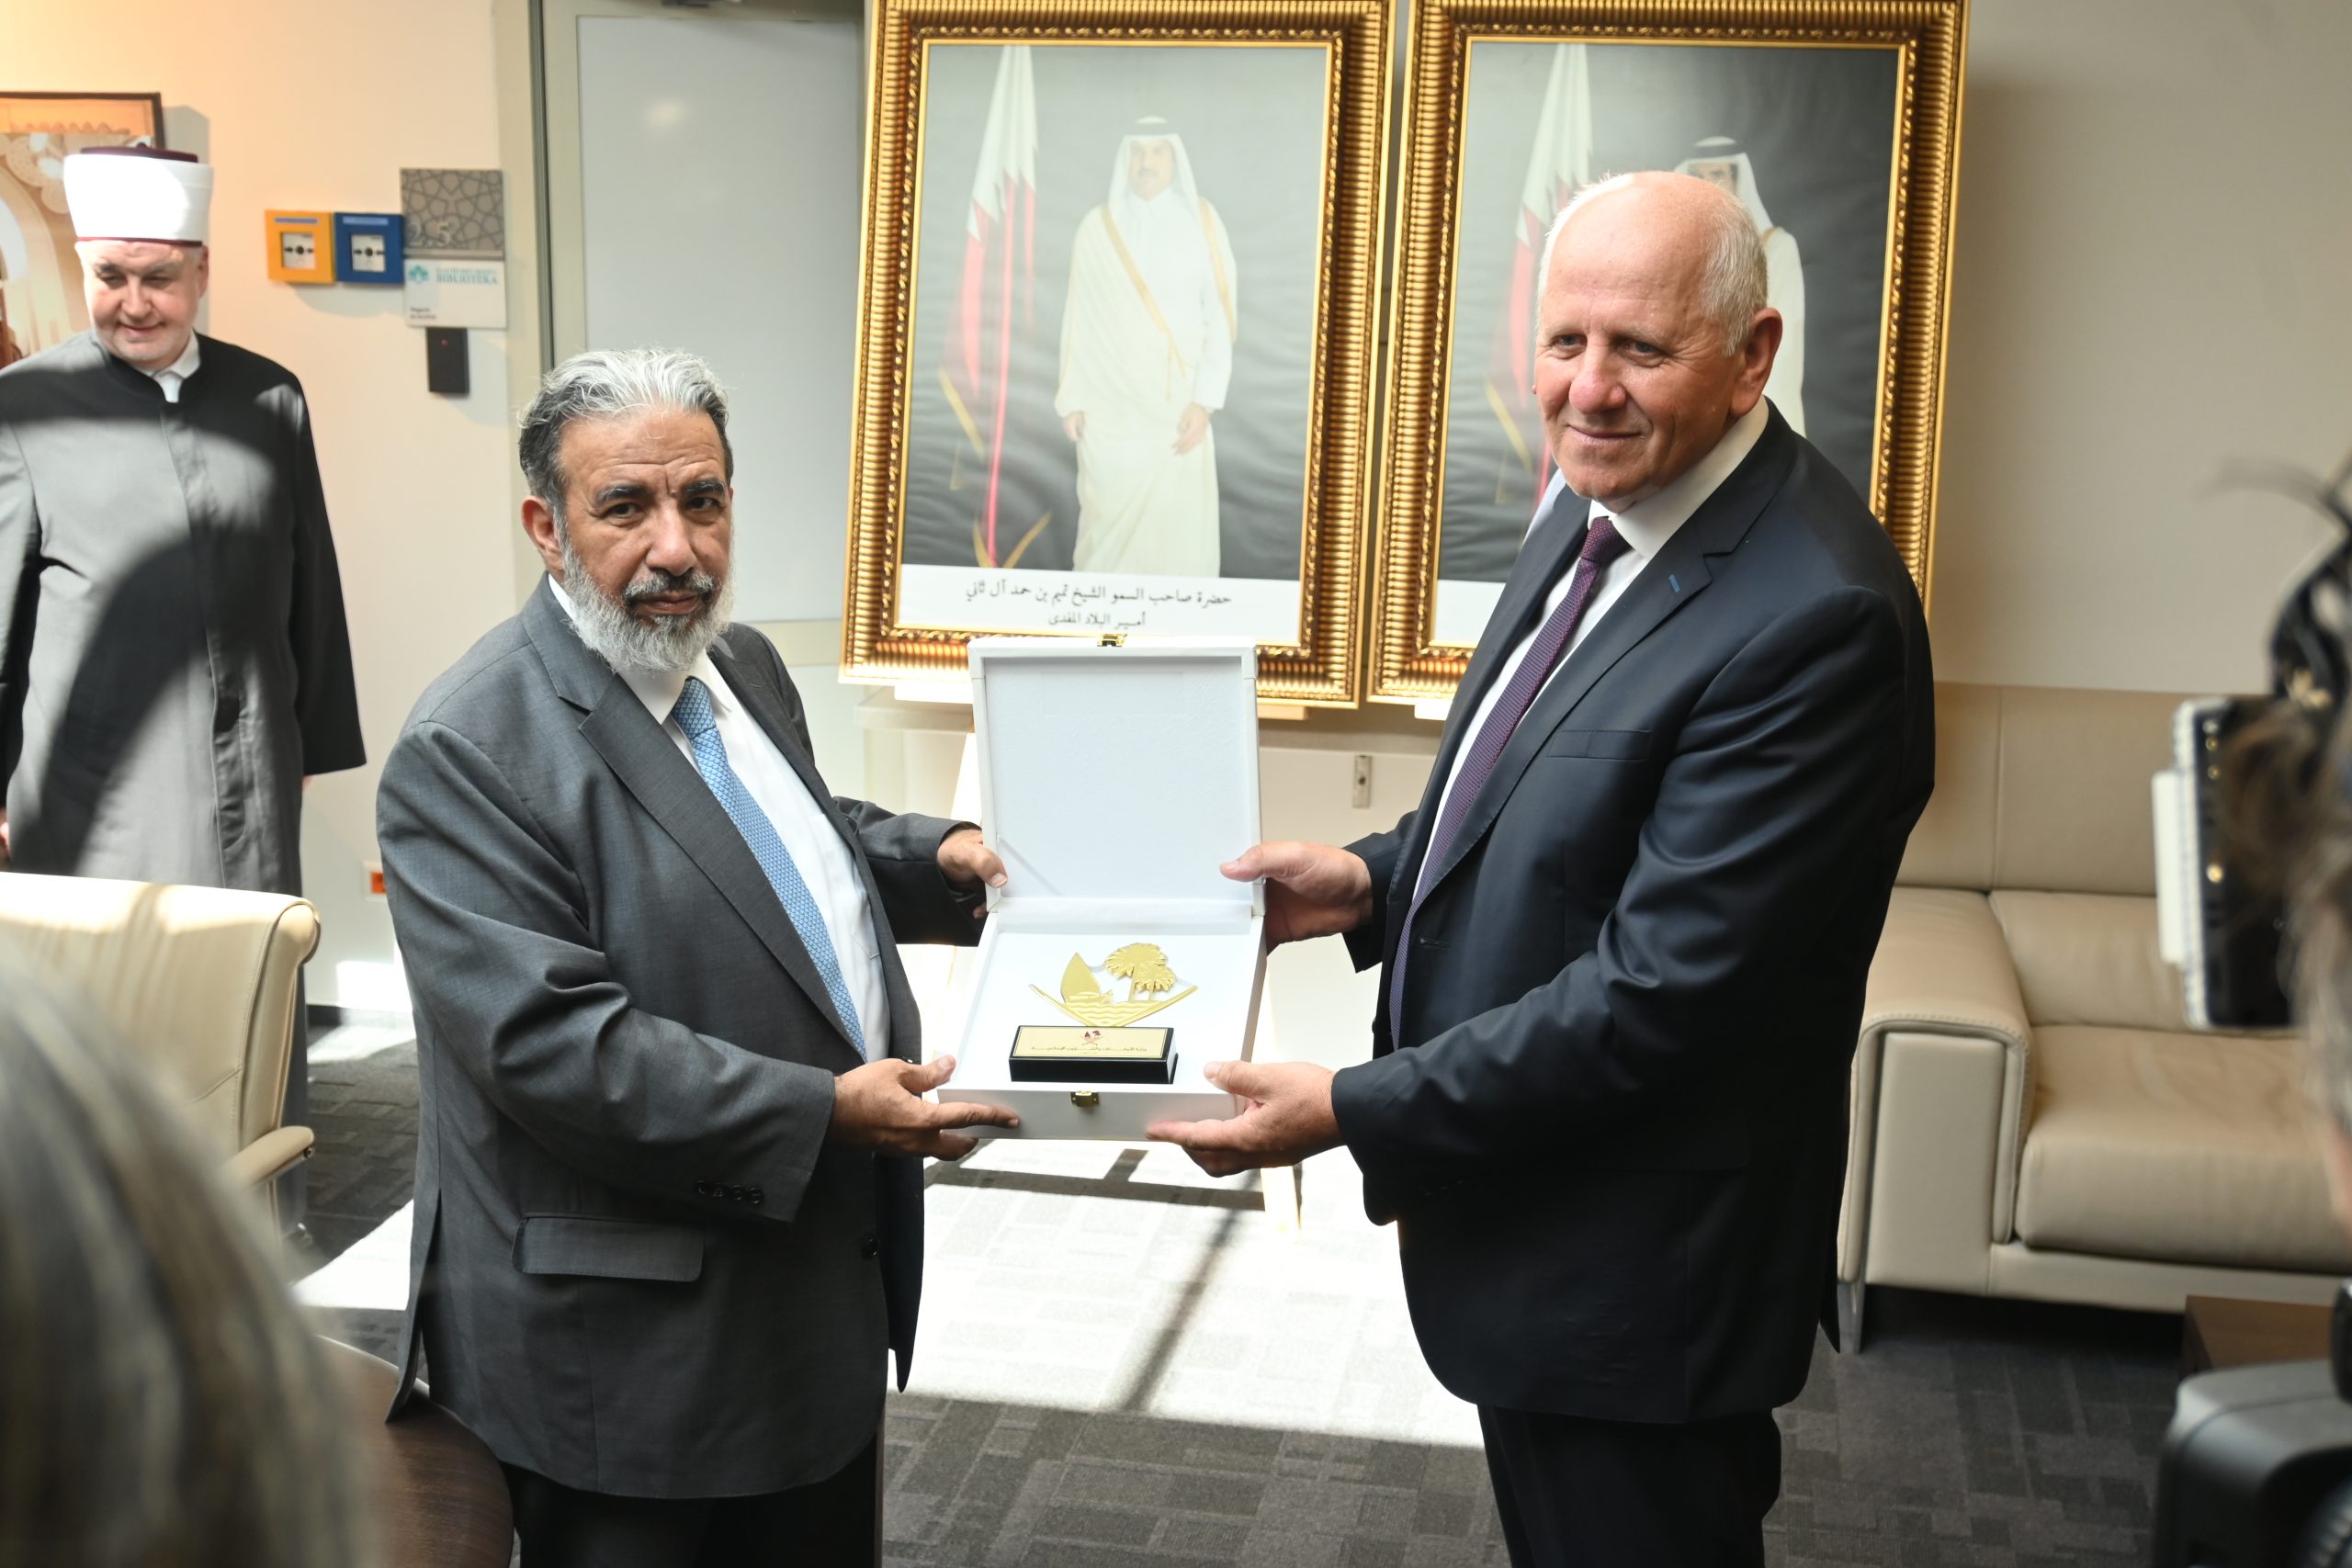 Ministar vakufa i islamskih pitanja Države Katar posjetio Gazi Husrev-begovu biblioteku